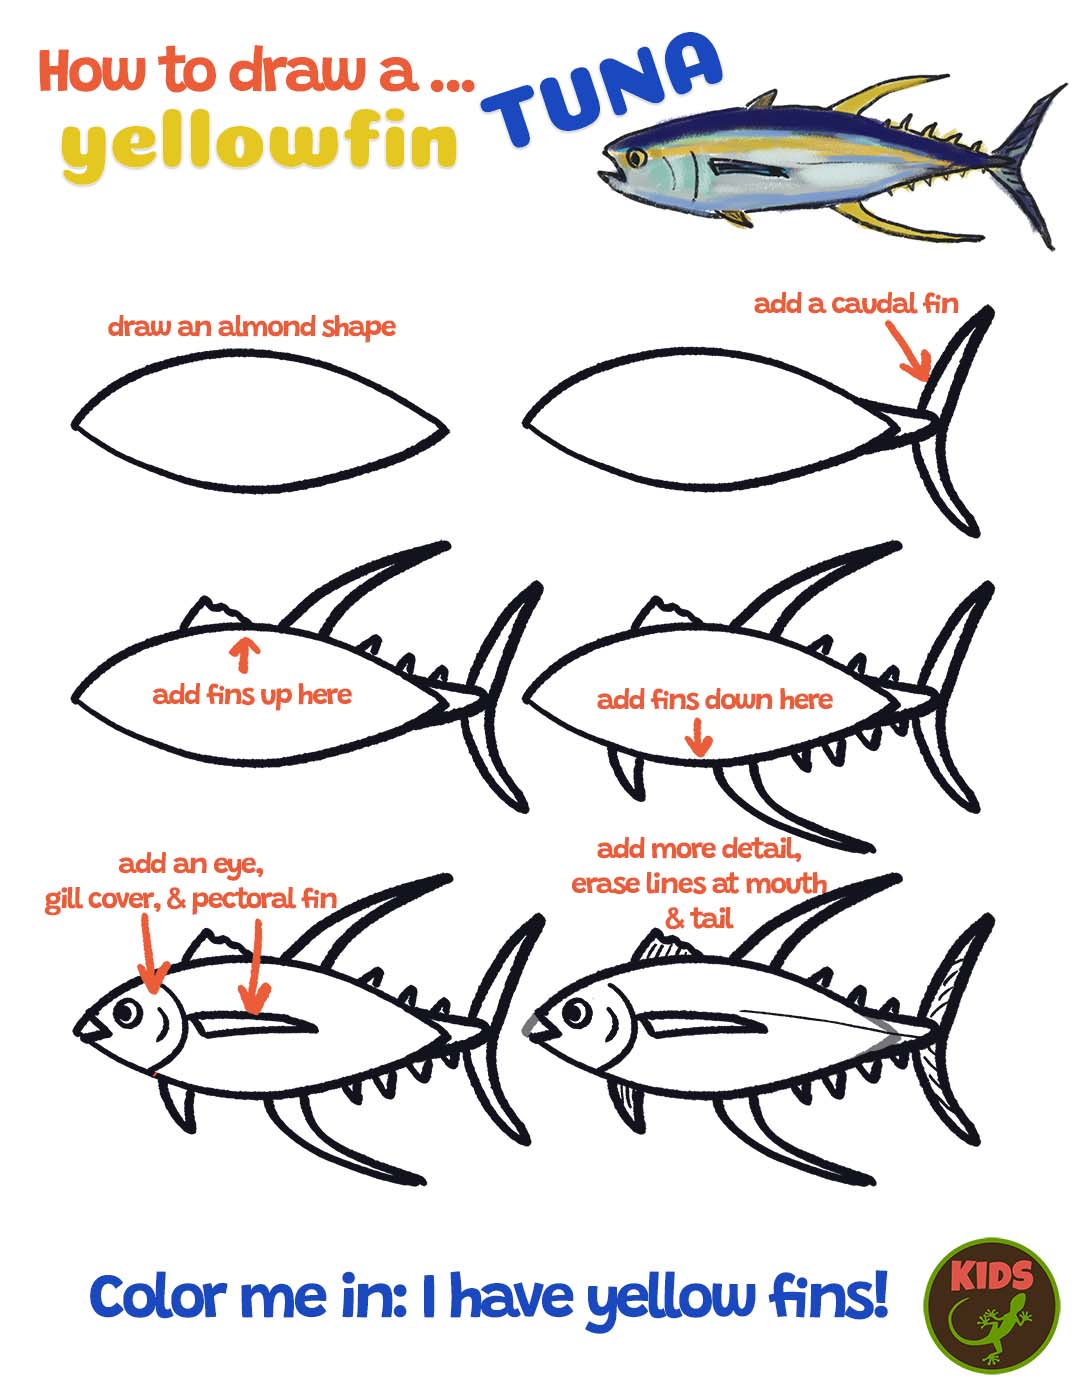 How to draw a yellowfin tuna Mongabay Kids